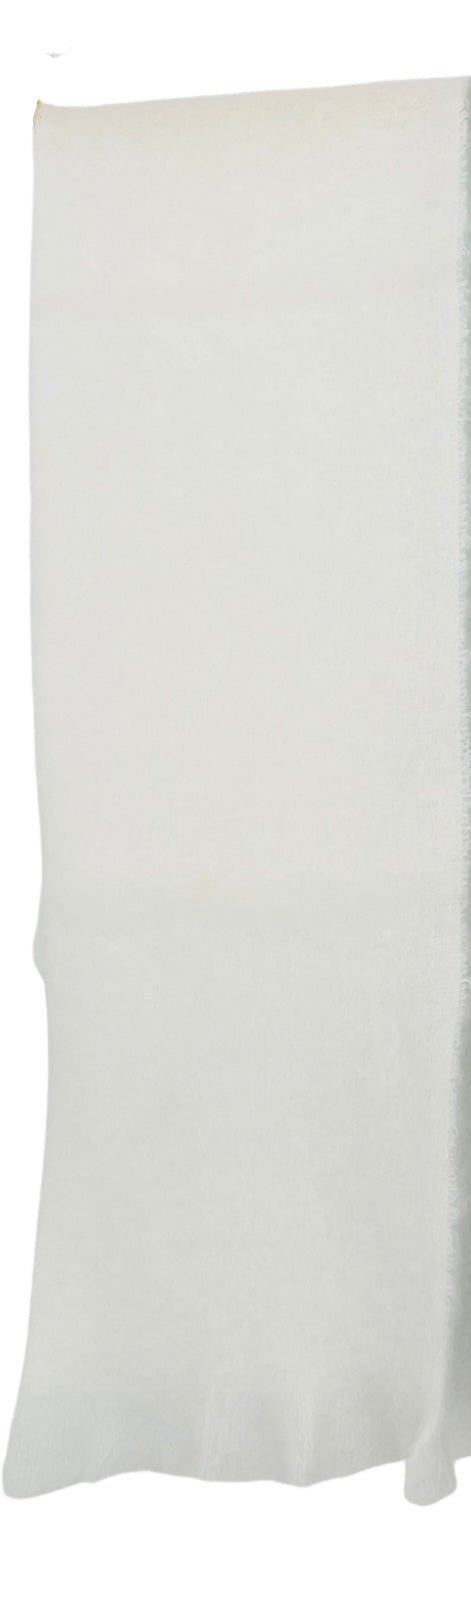 Mantas Ezcaray Spanien Premium Mohair-Schal wahlweise in den Farben Crem, helles Türkis & mittel Grau Ca. 35x170cm - Bitangel RENOVATE & FURNISH HOMES GmbH